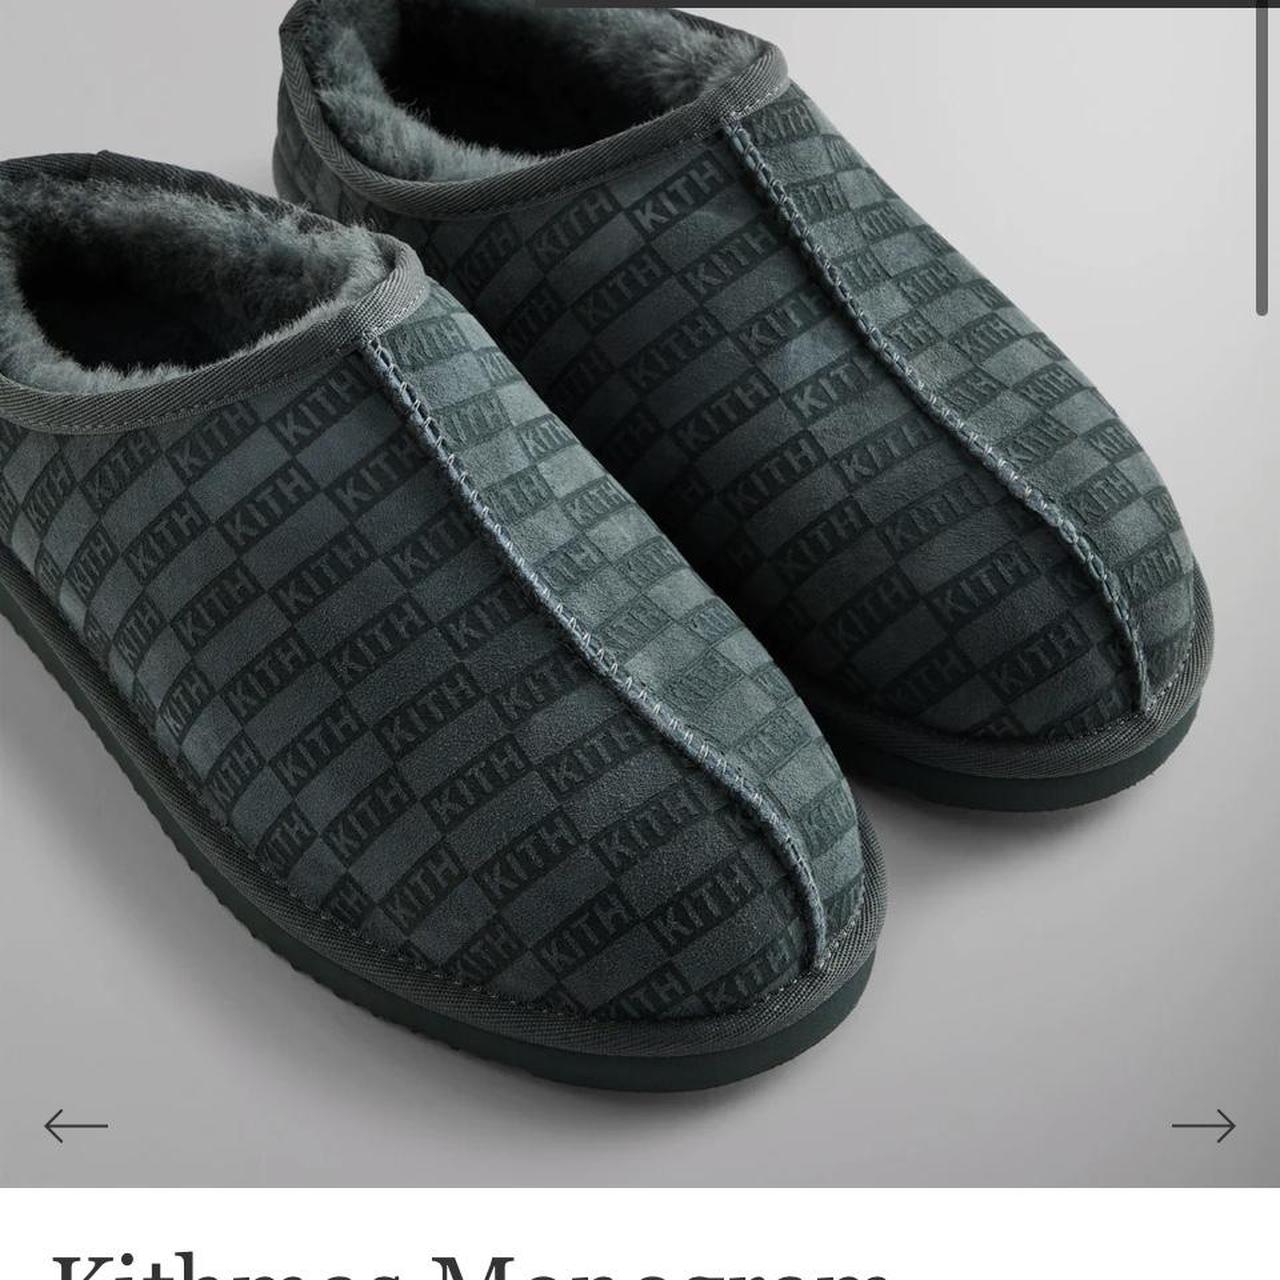 Kithmas monogram shearling slippers size 11 brand... - Depop